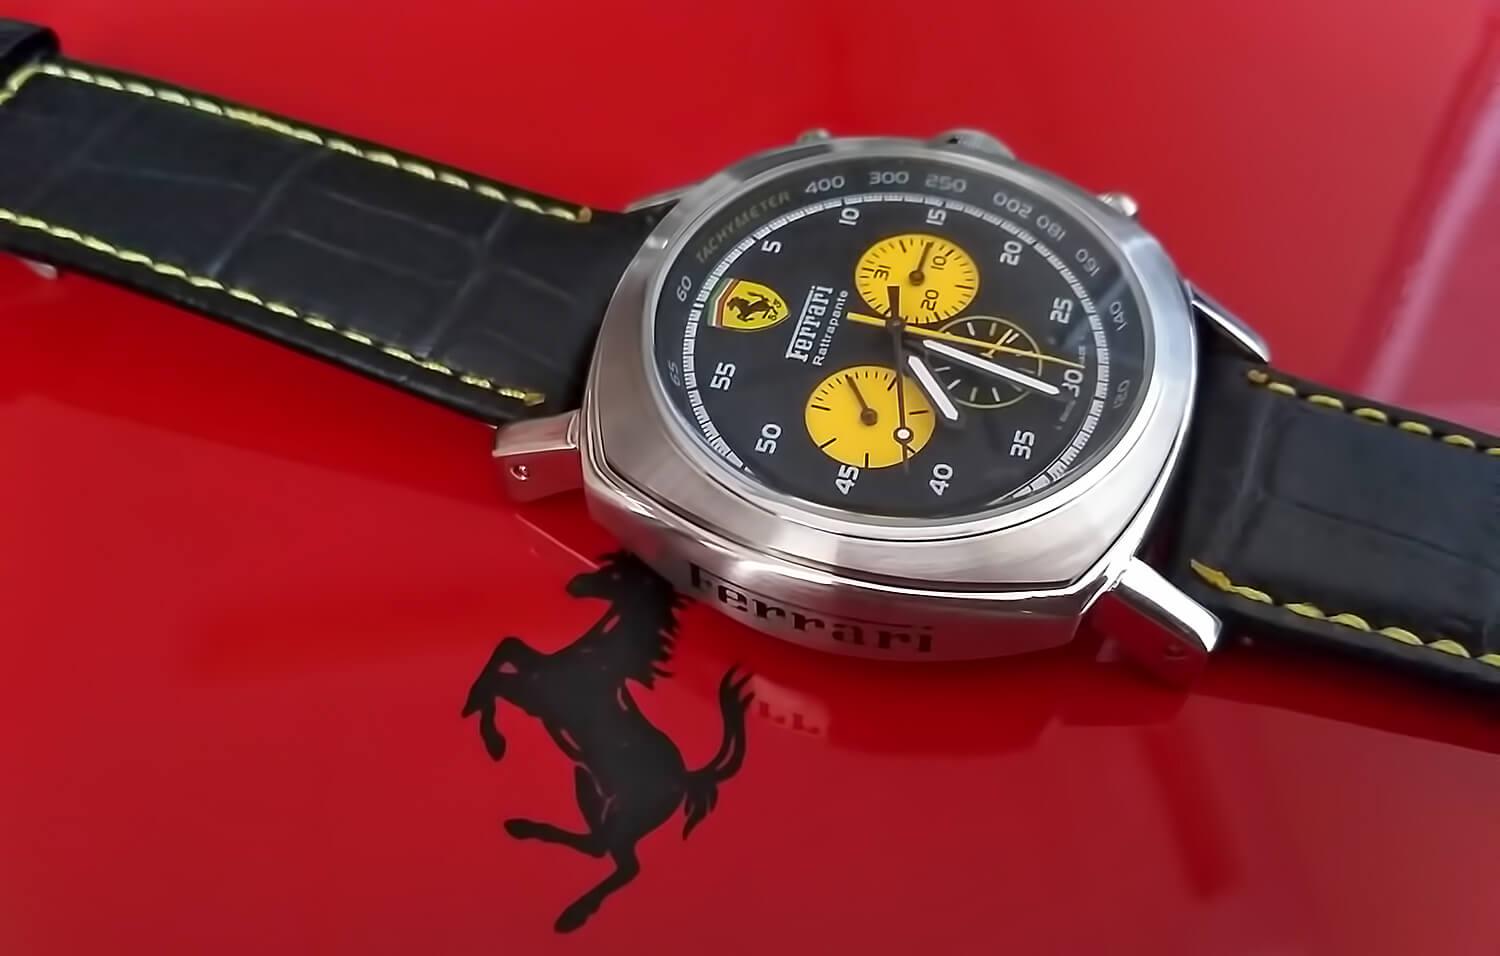 Часы Officine Panerai Ferrari Scuderia создают ощущение скорости, драйва, спортивного азарта